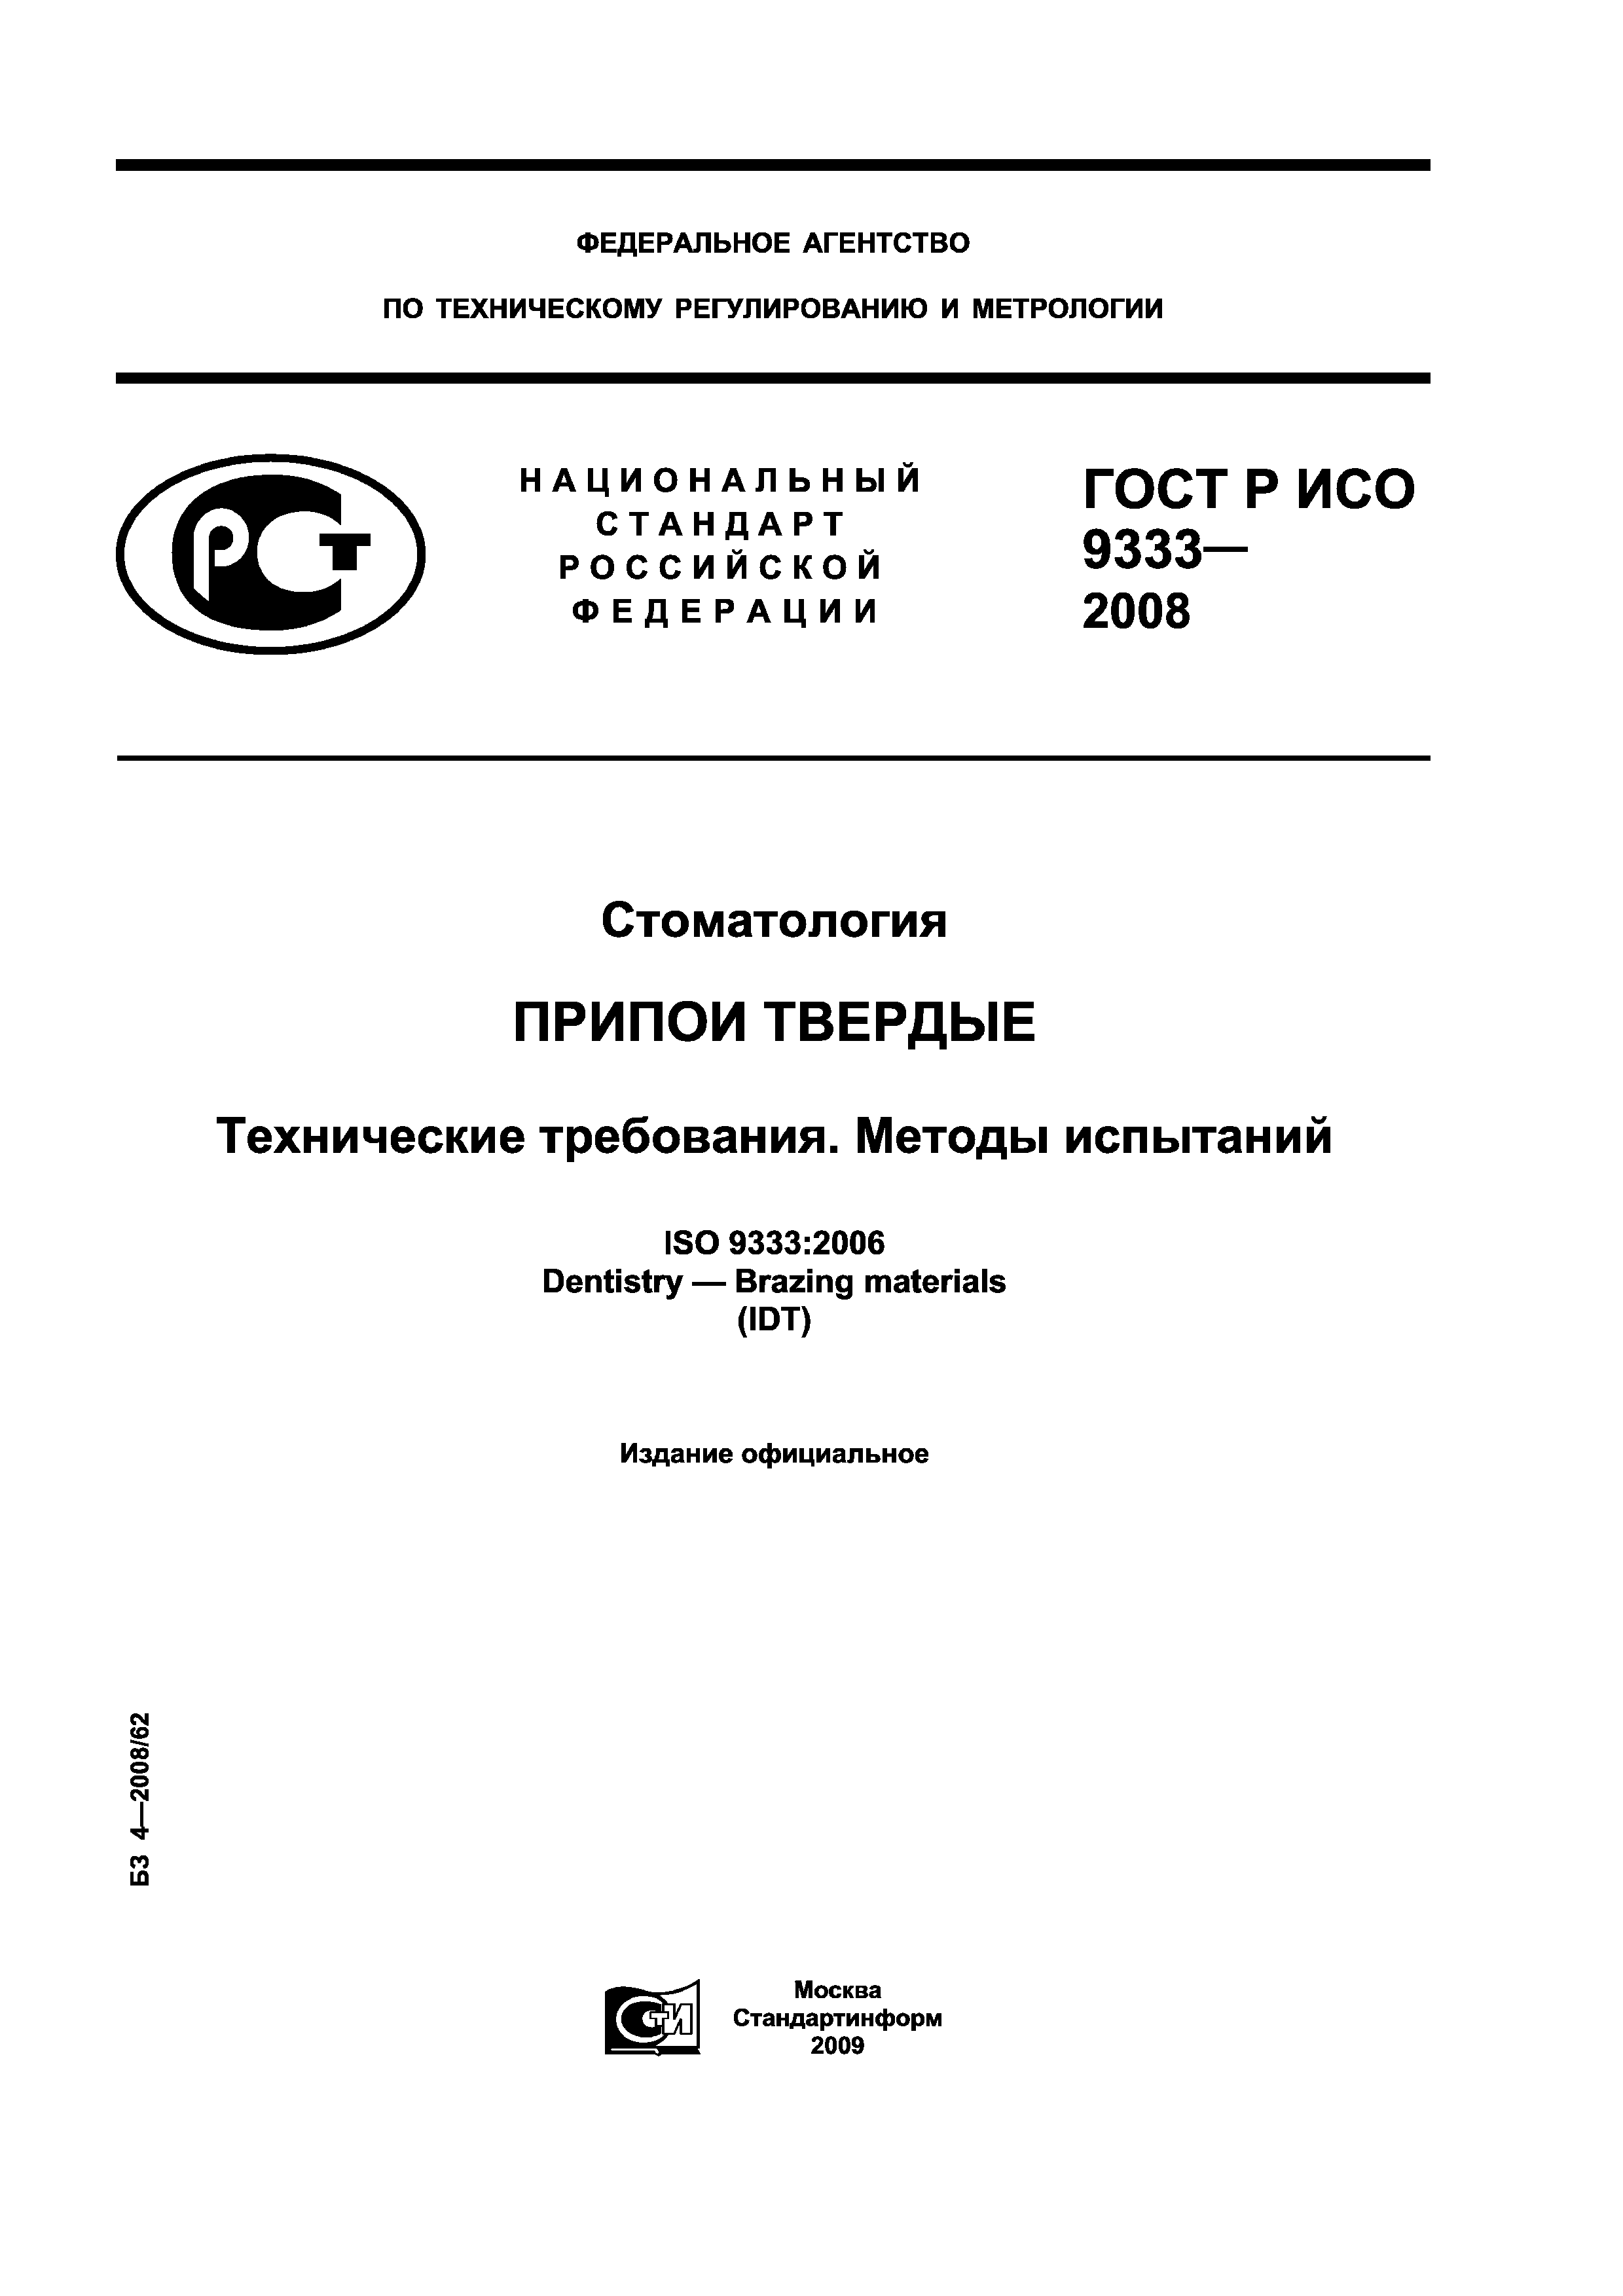 ГОСТ Р ИСО 9333-2008